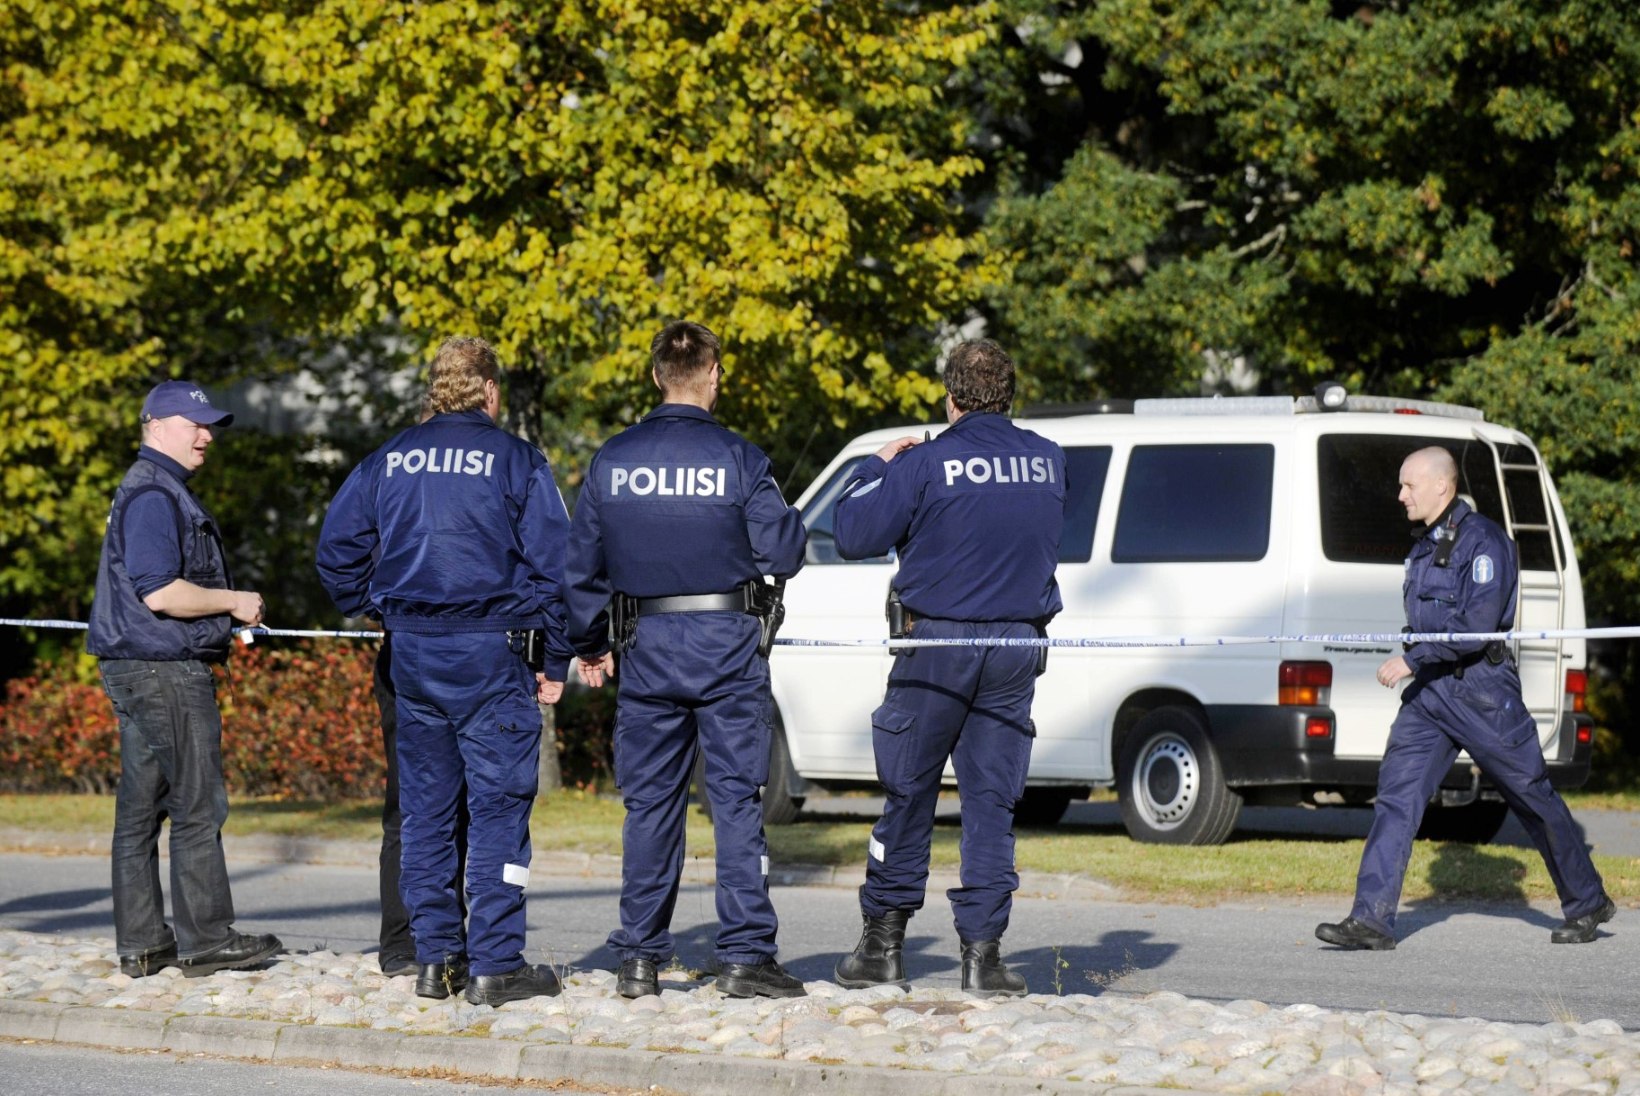 TAGAAJAMINE SOOMES: Eesti numbrimärgiga varastatud auto juht jättis tanklas maksmata